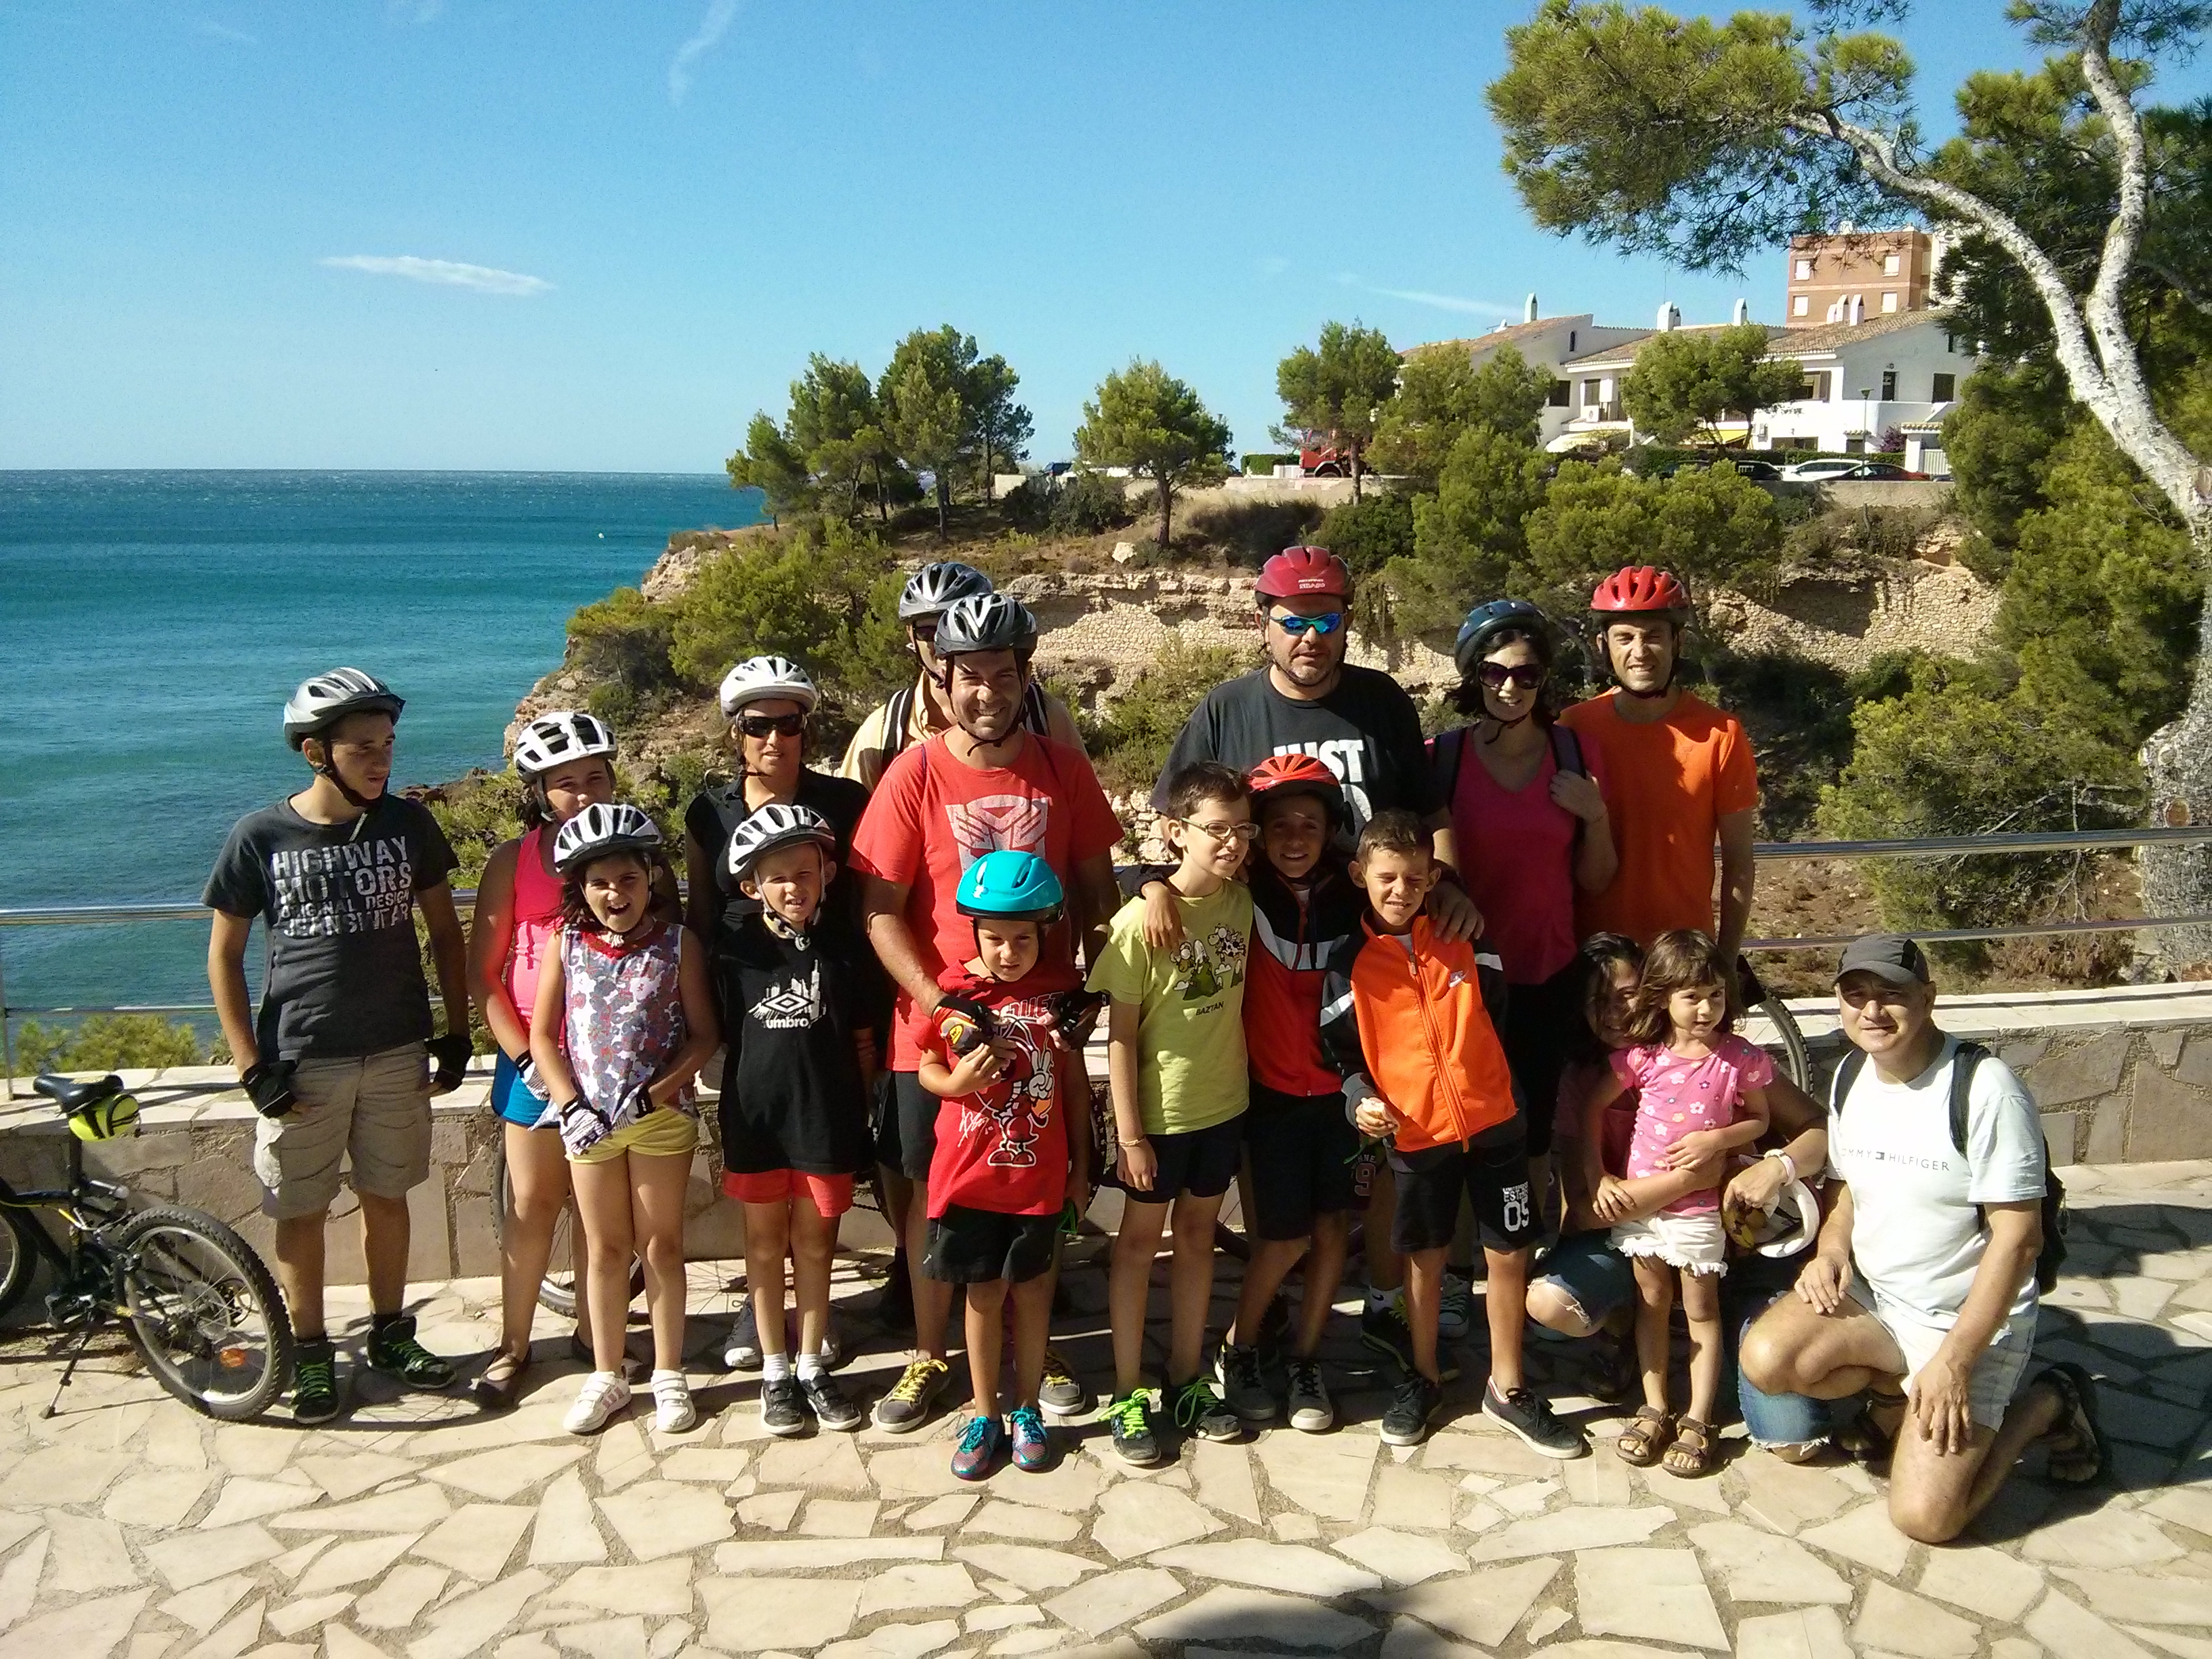 Mont-roig Miami Turisme organitza excursions en bicicleta 